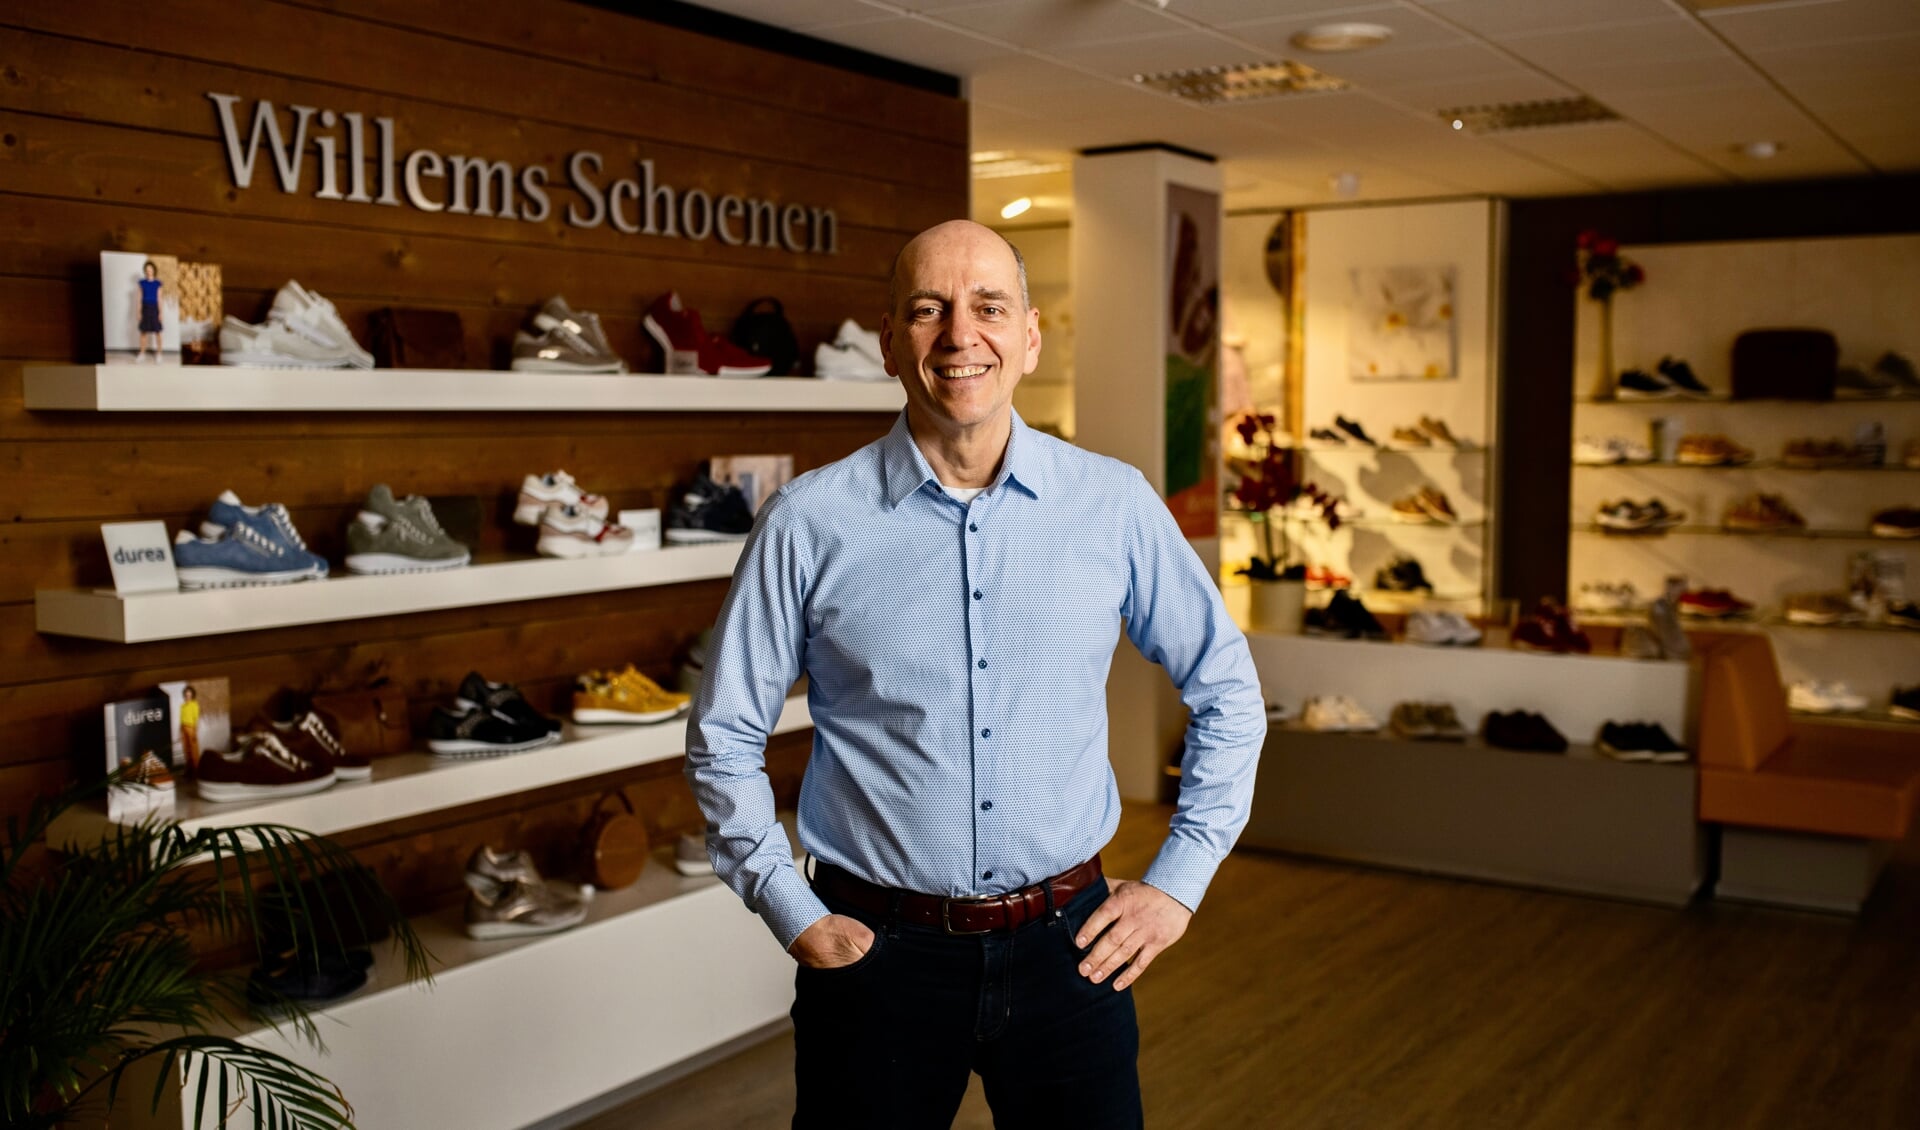 Herman Willems - eigenaar van Willems Schoenen - ging in februari 'viral' als 'De zingende schoenverkoper'. De schoenenwinkel is gespecialiseerd in dames- en herenschoenen voor mensen met afwijkende maten.